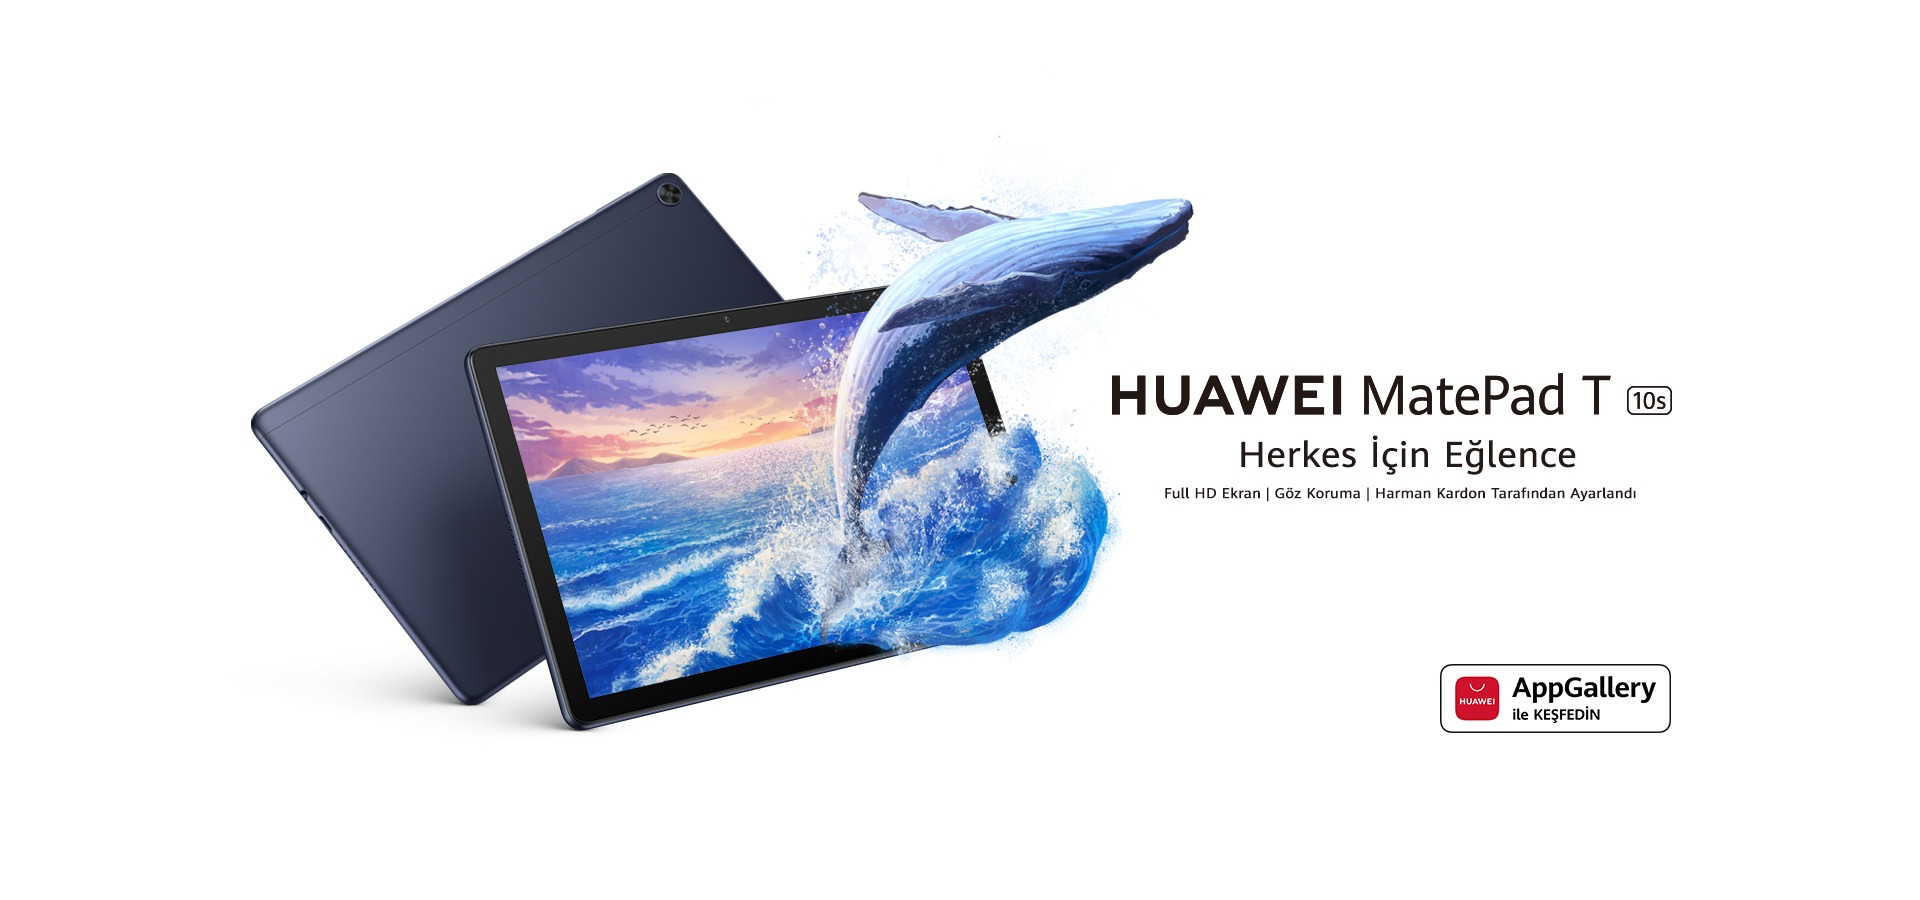 HUAWEI MatePad T 10s, Geniş Ekranıyla Güçlü Multimedya Deneyimi Sunuyor